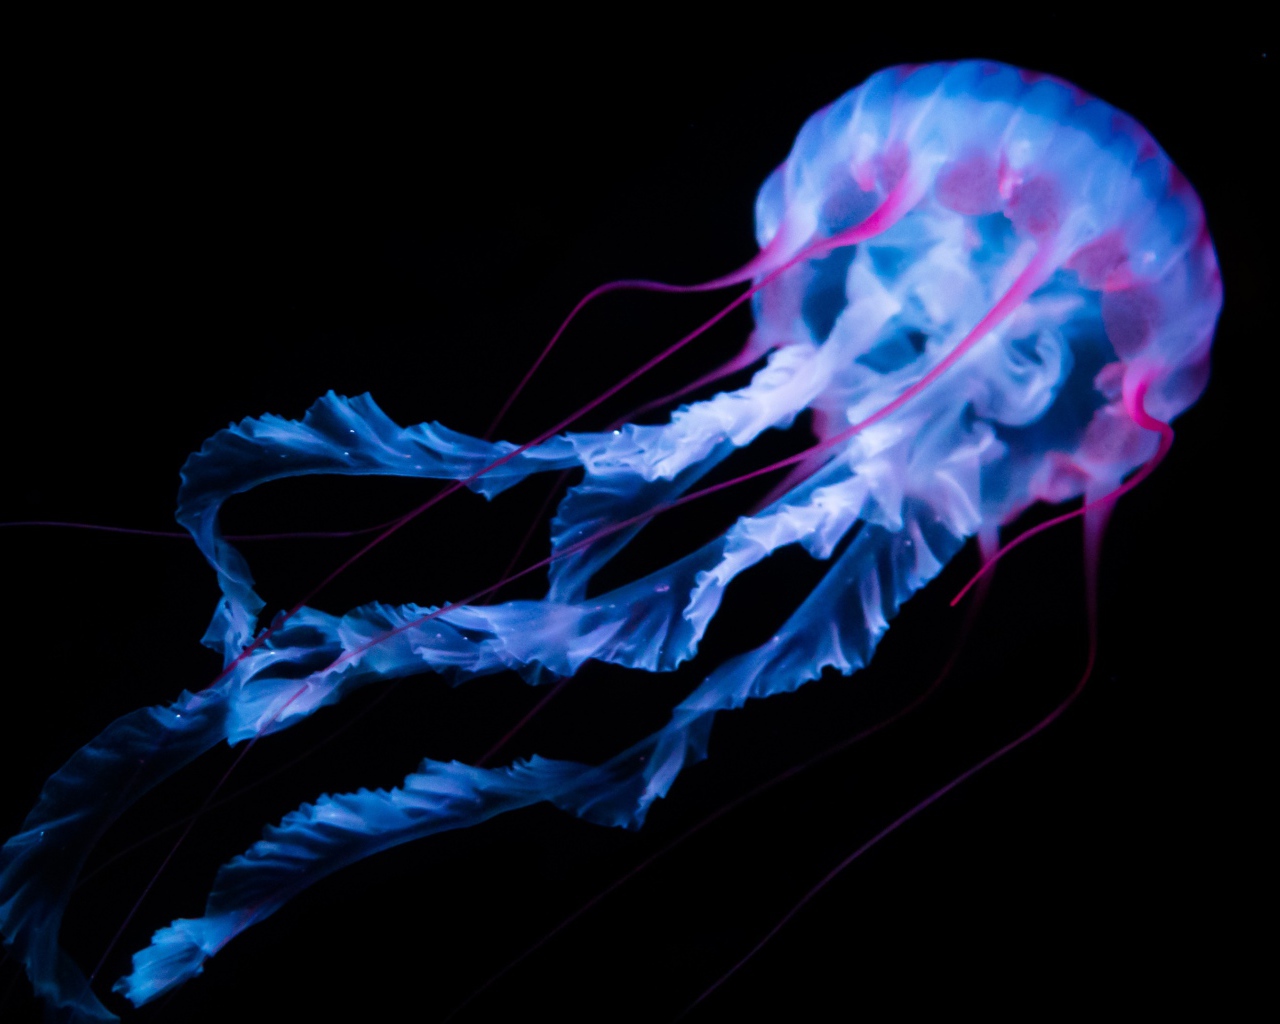 Неоновая медуза плывет на черном фоне